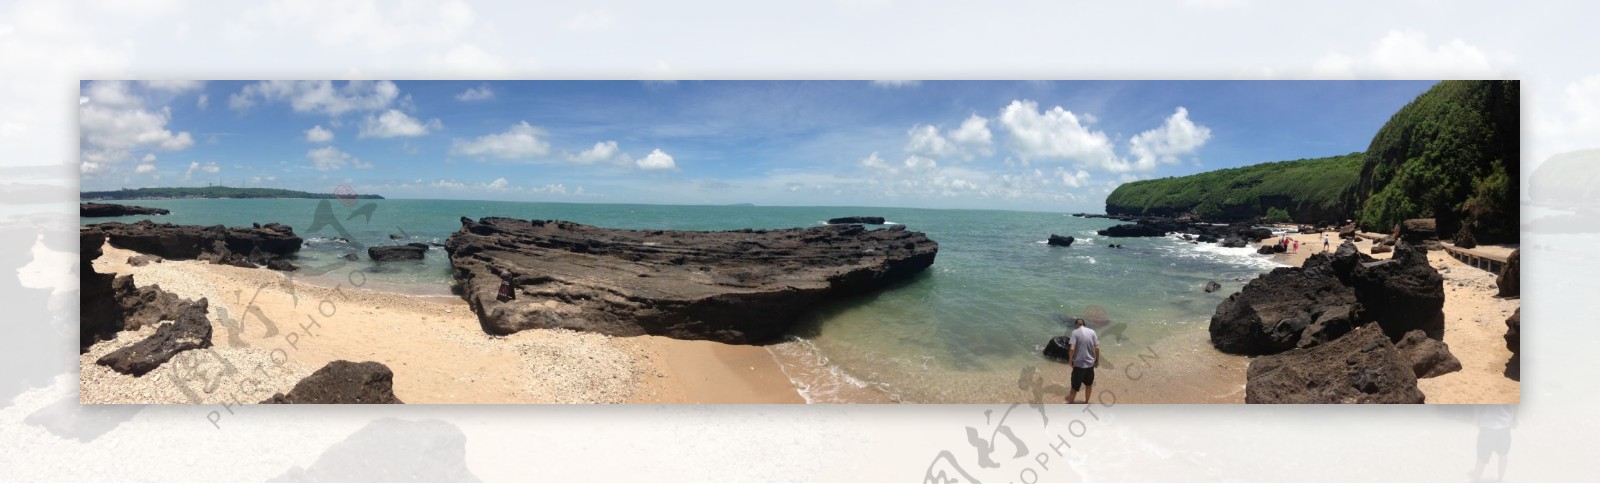 石螺口海滩全景图图片